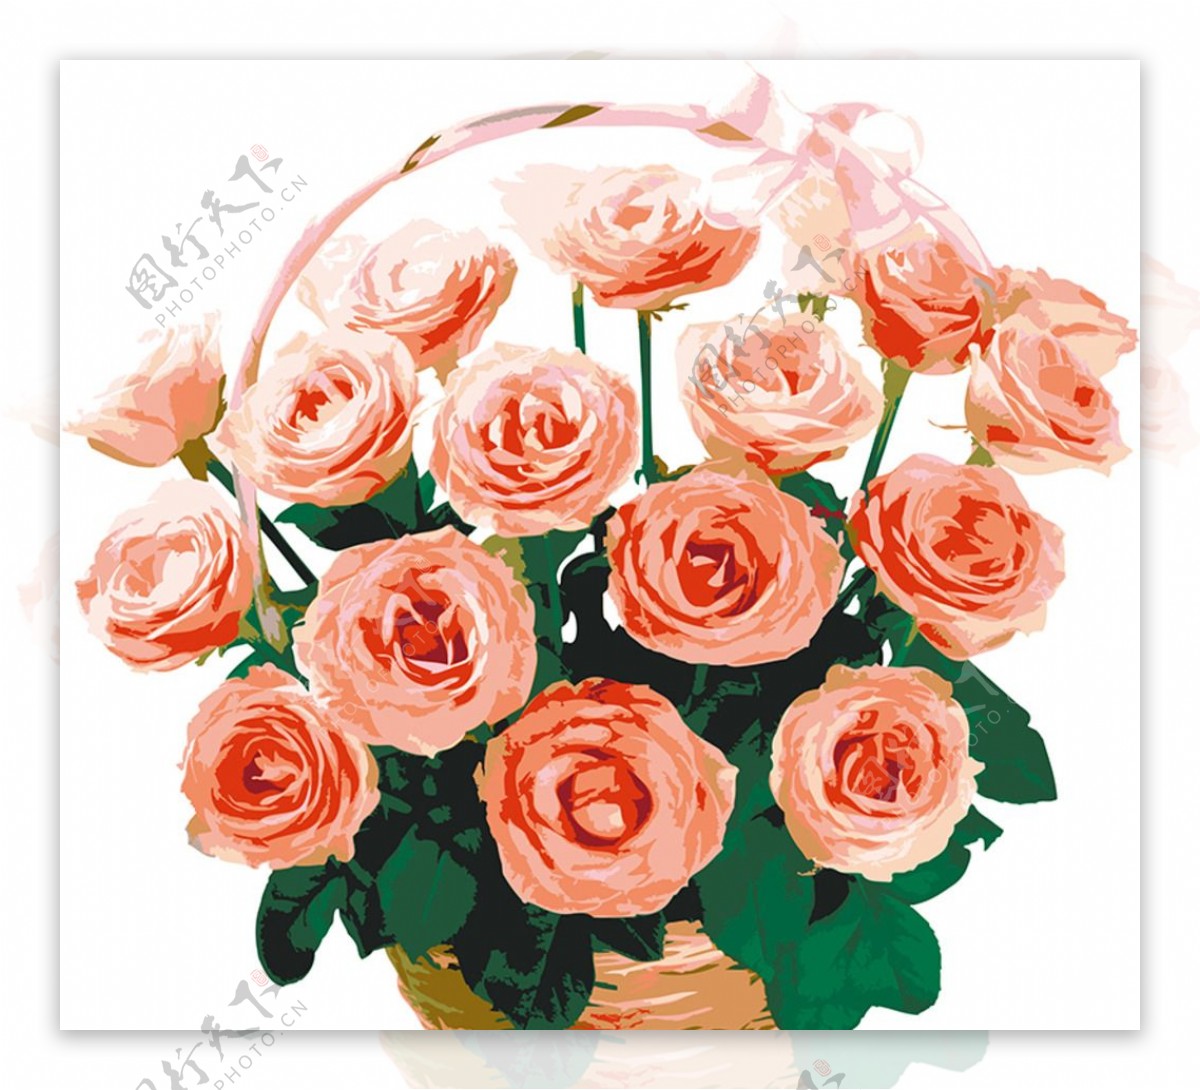 彩绘玫瑰花束矢量素材